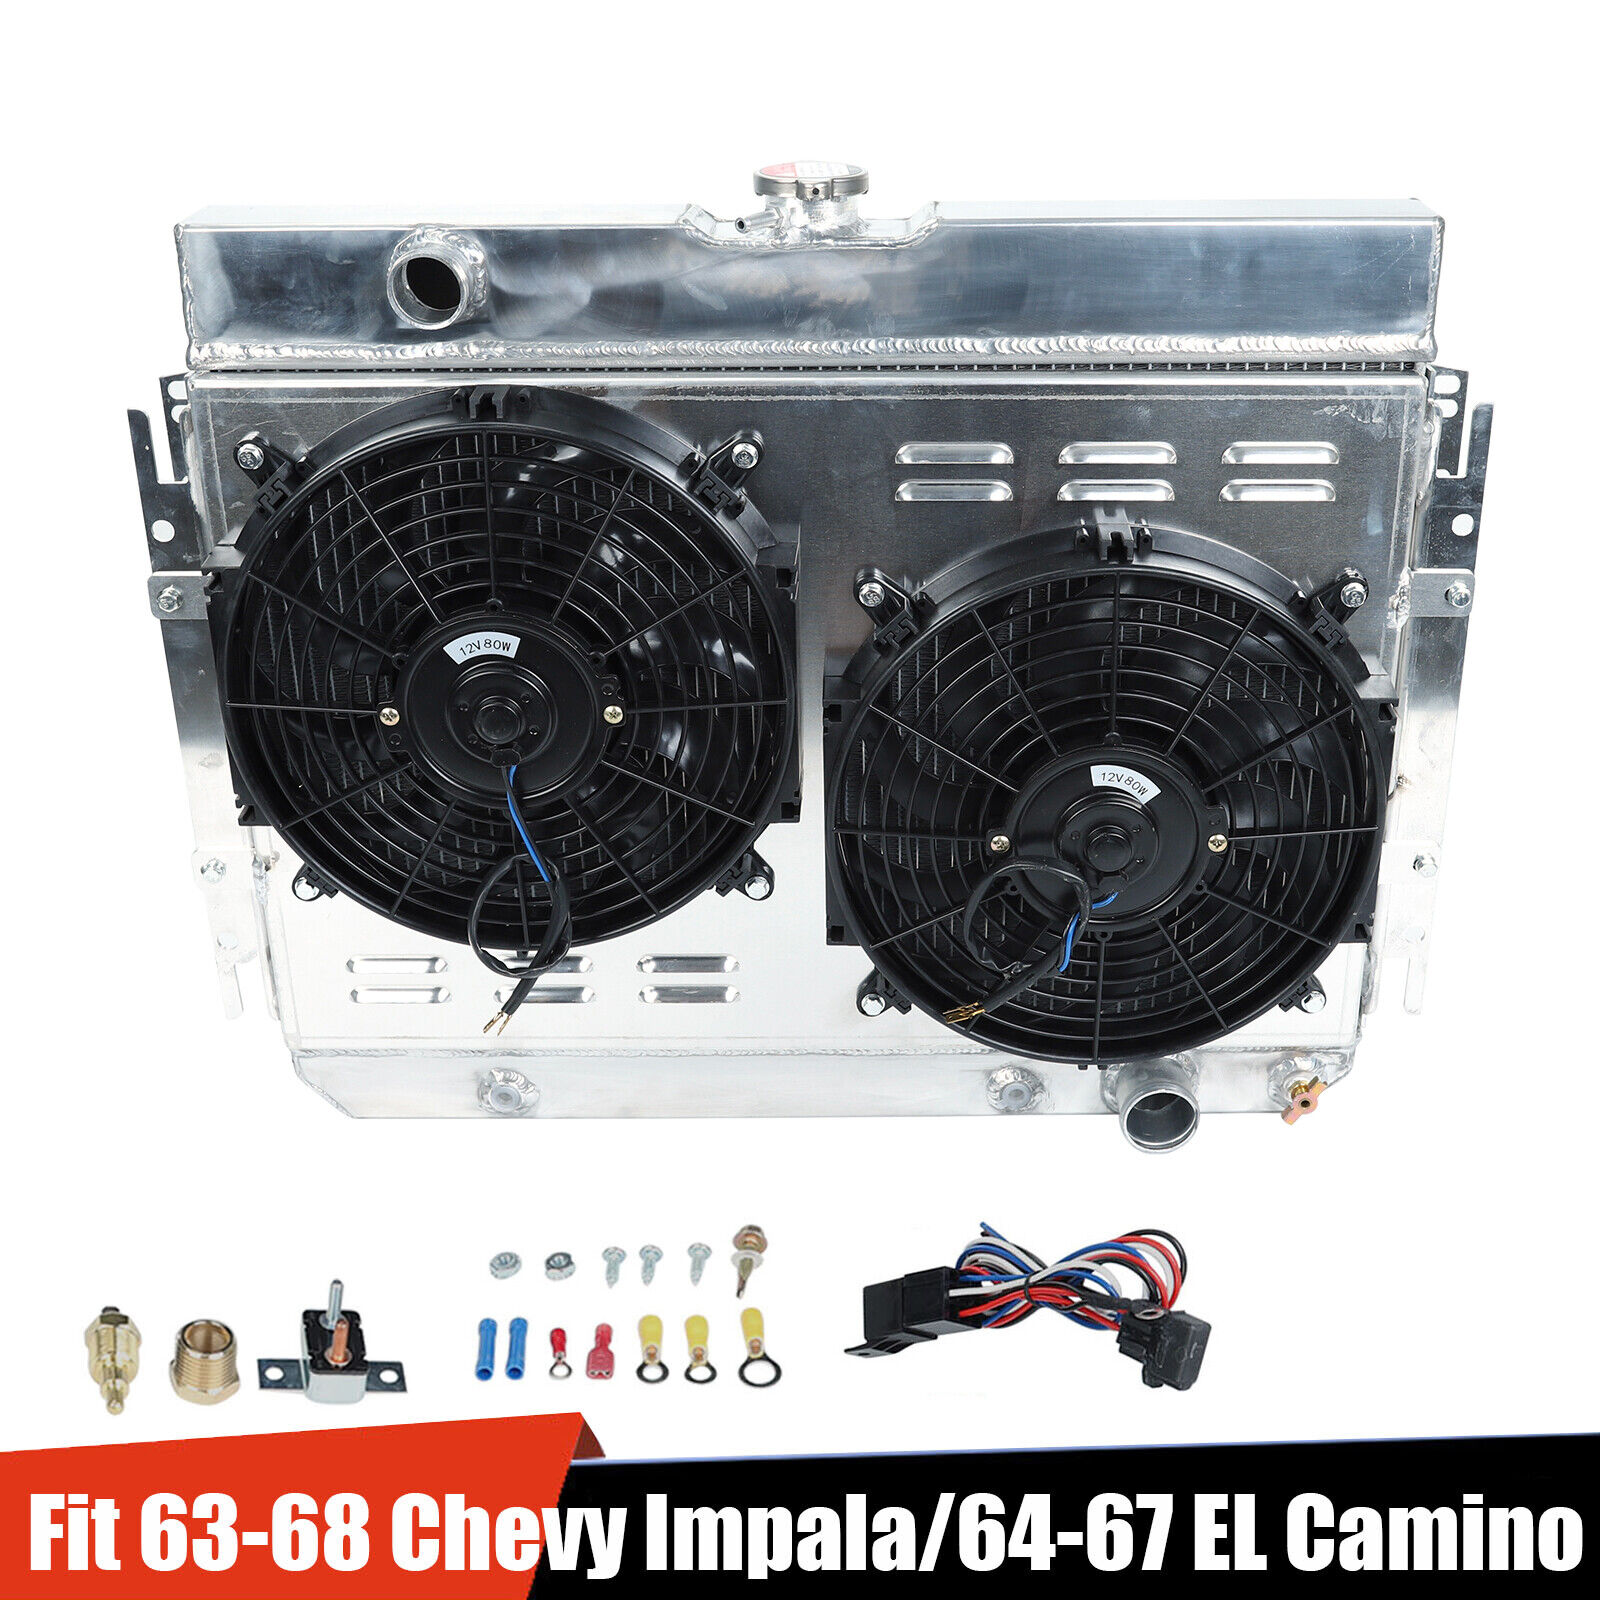 Aluminum Radiator 3 Row +Shroud Fan+ Relay Kit For Chevy Impala/ EL Camino 63-68